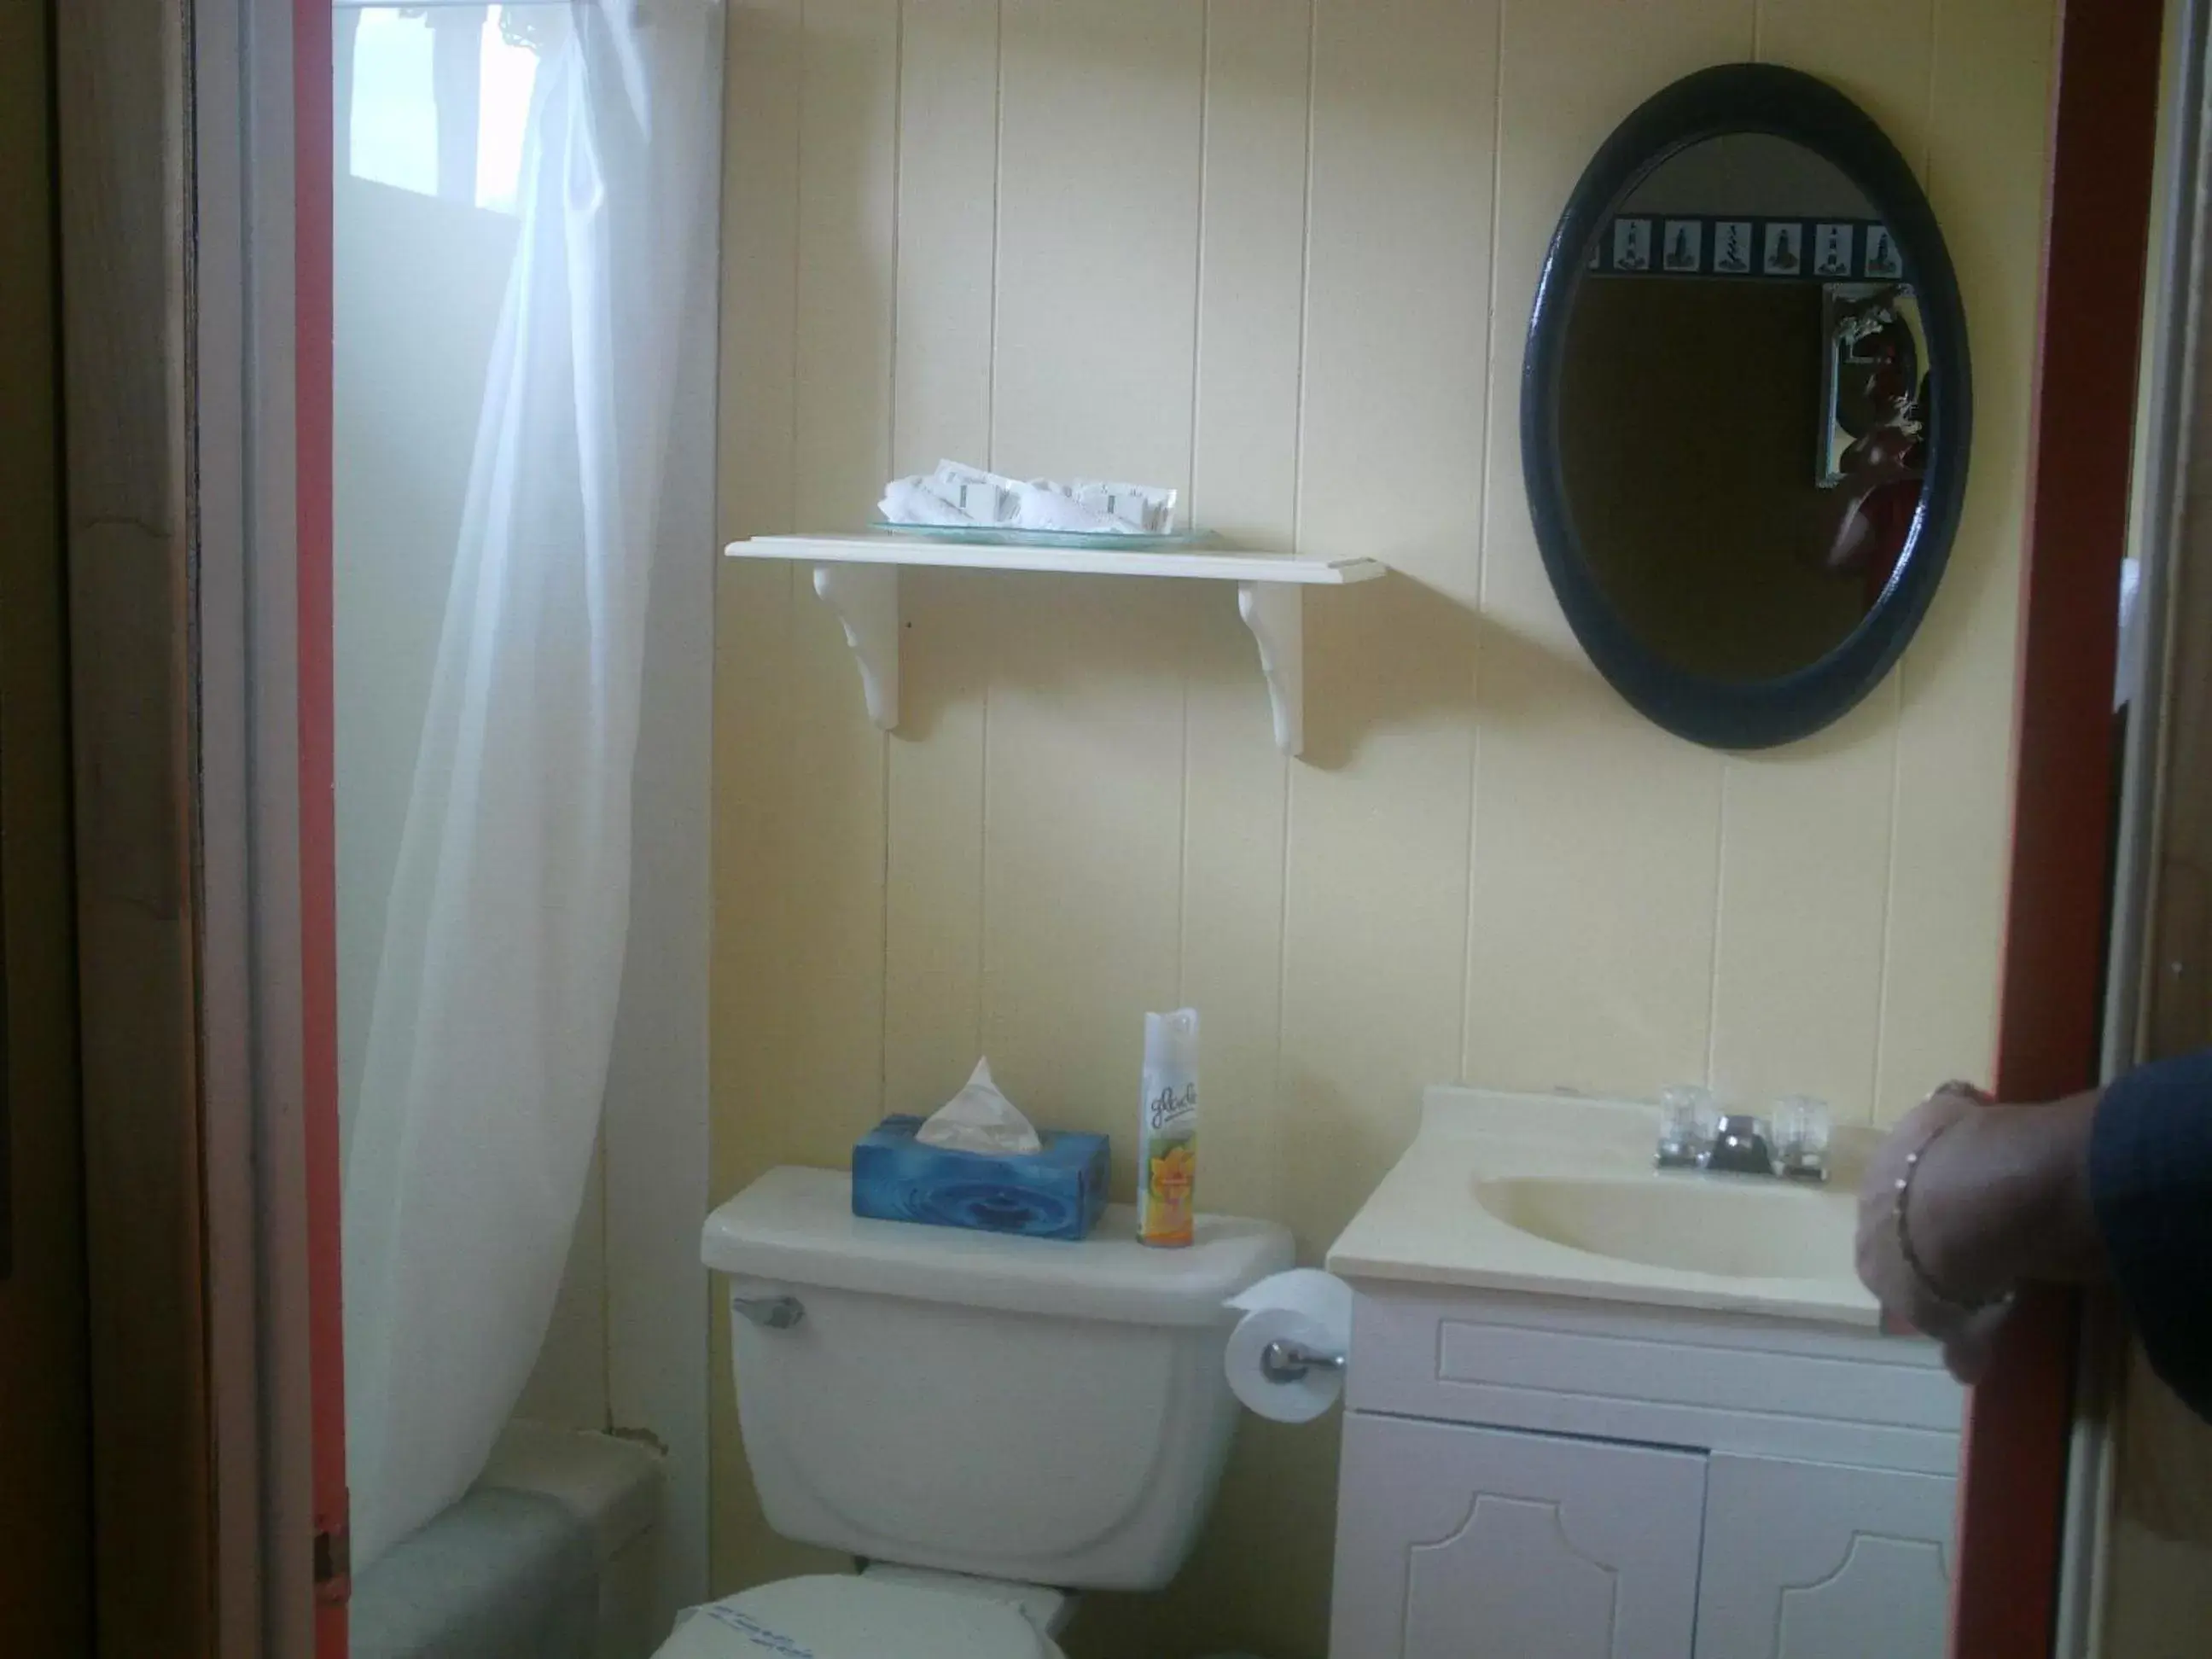 Bathroom in Motel Leblanc